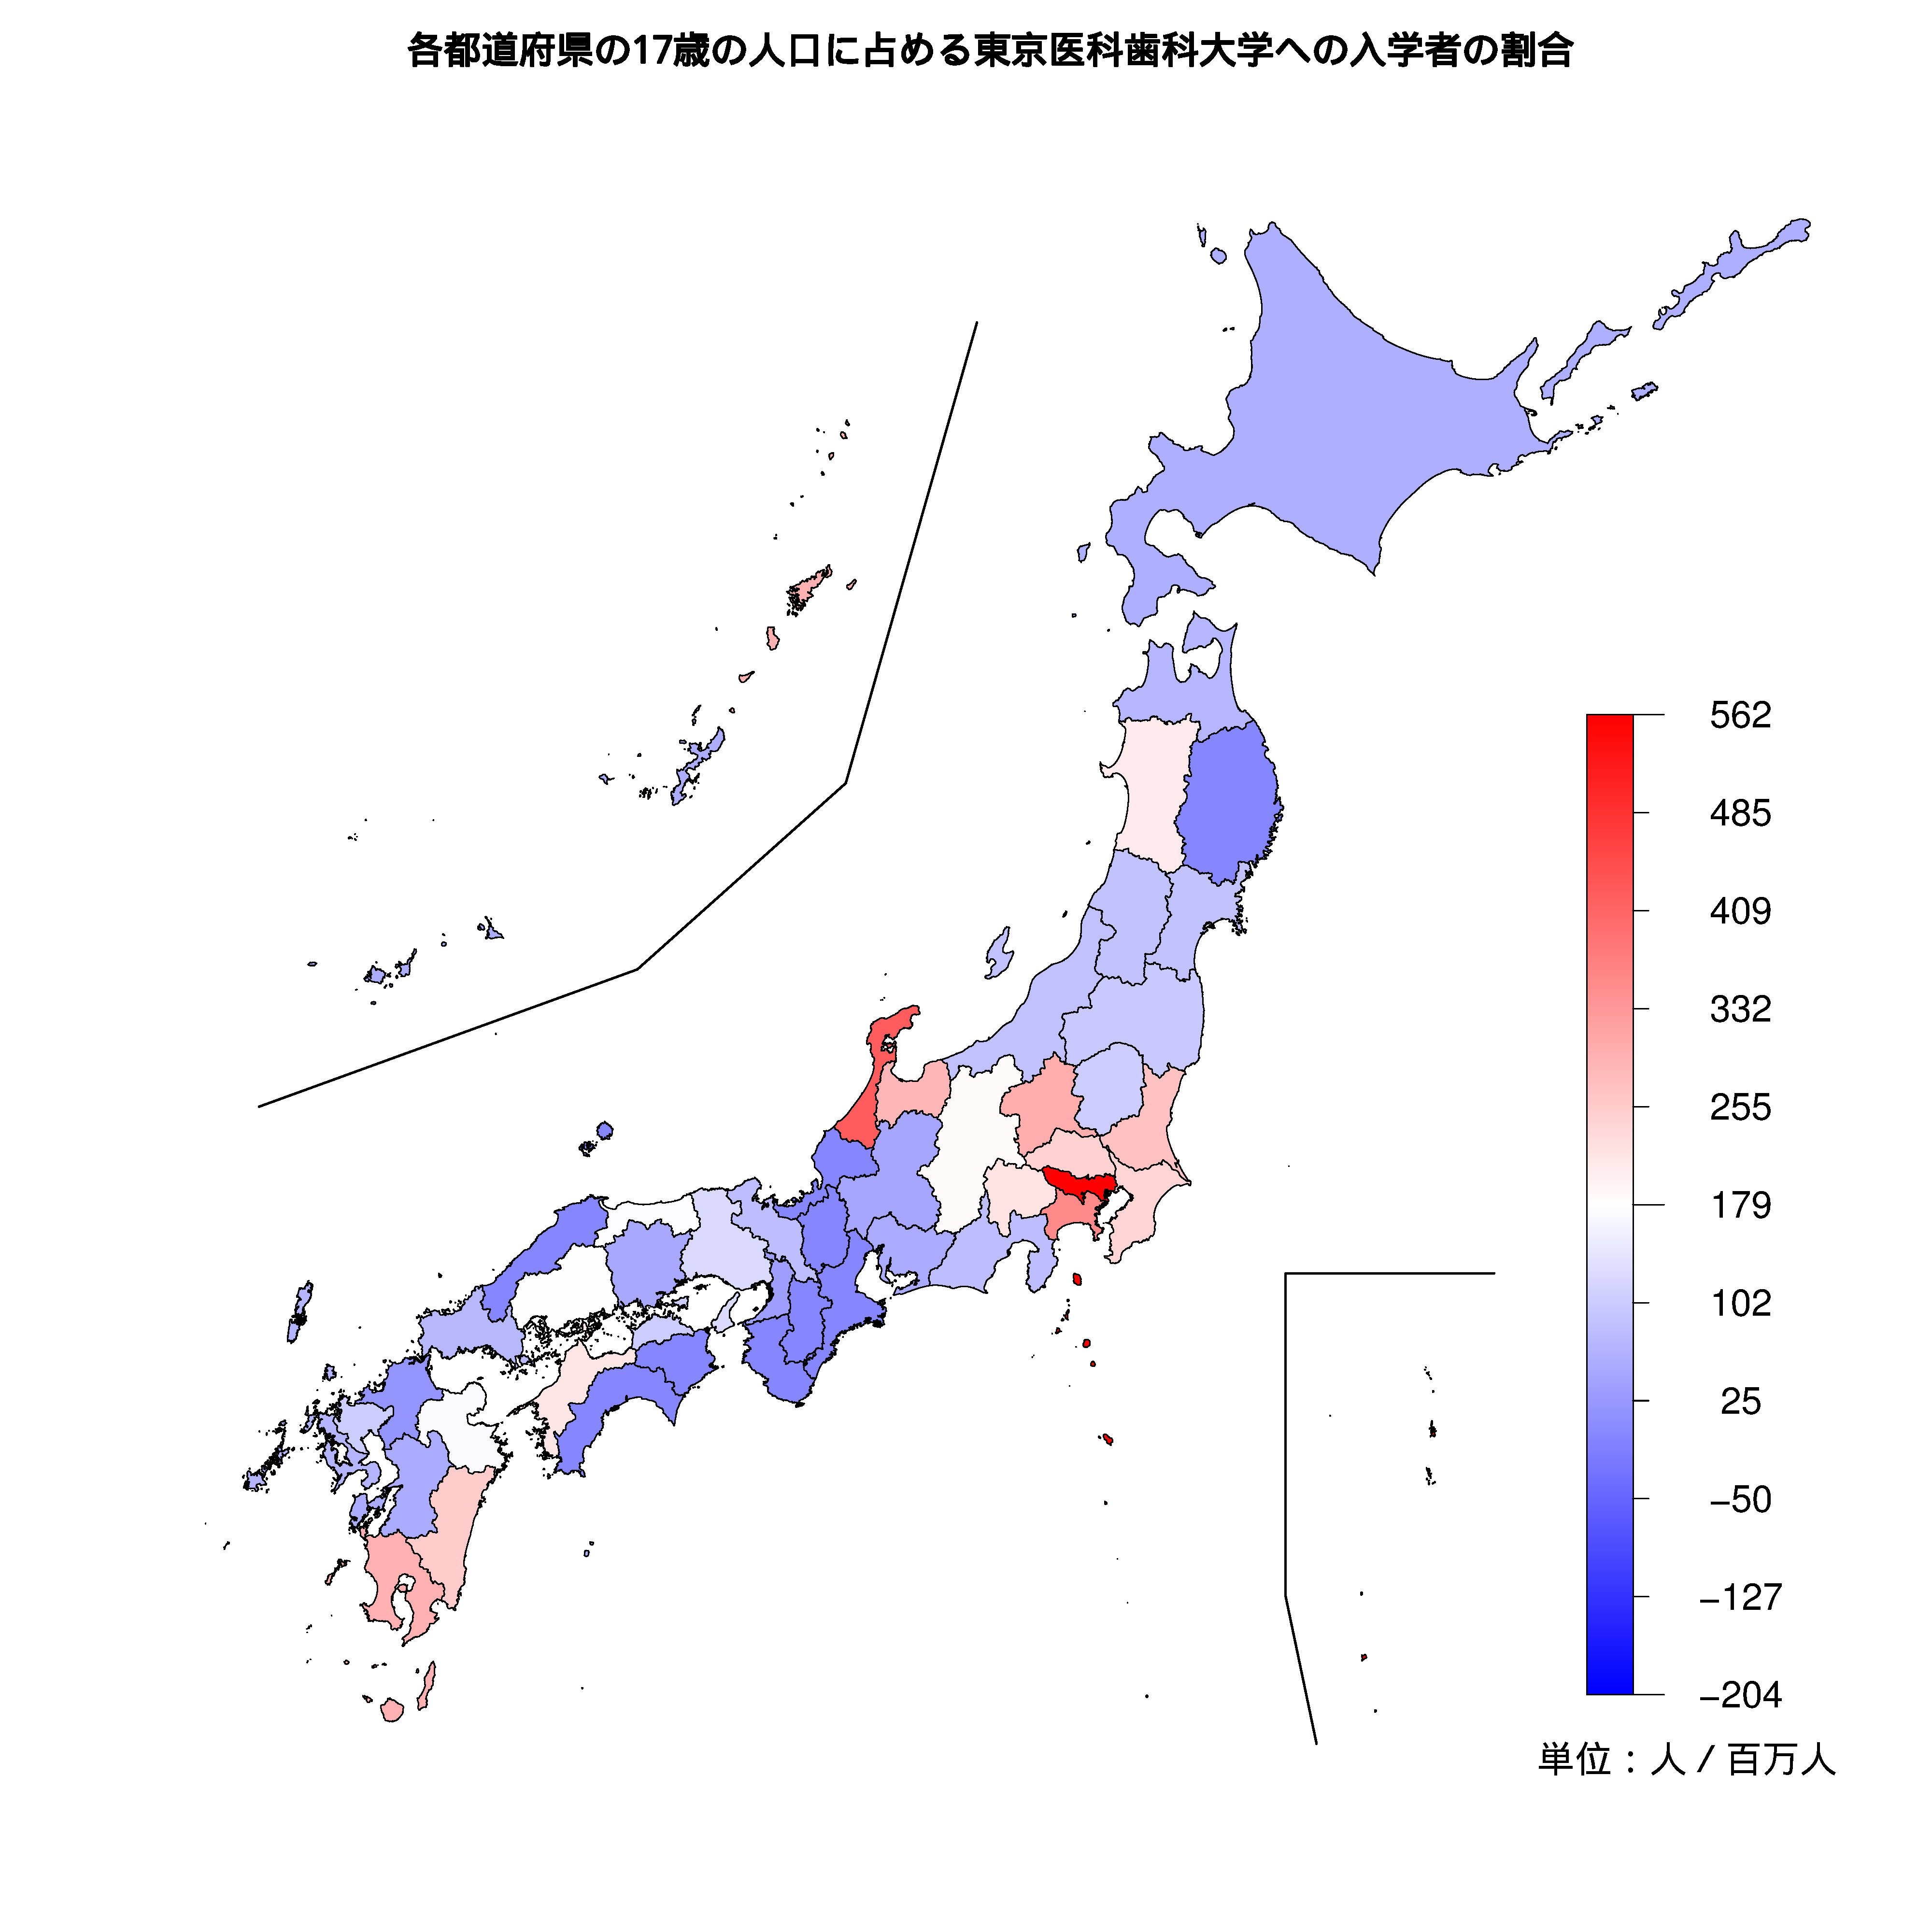 東京医科歯科大学への入学者が多い都道府県の色分け地図